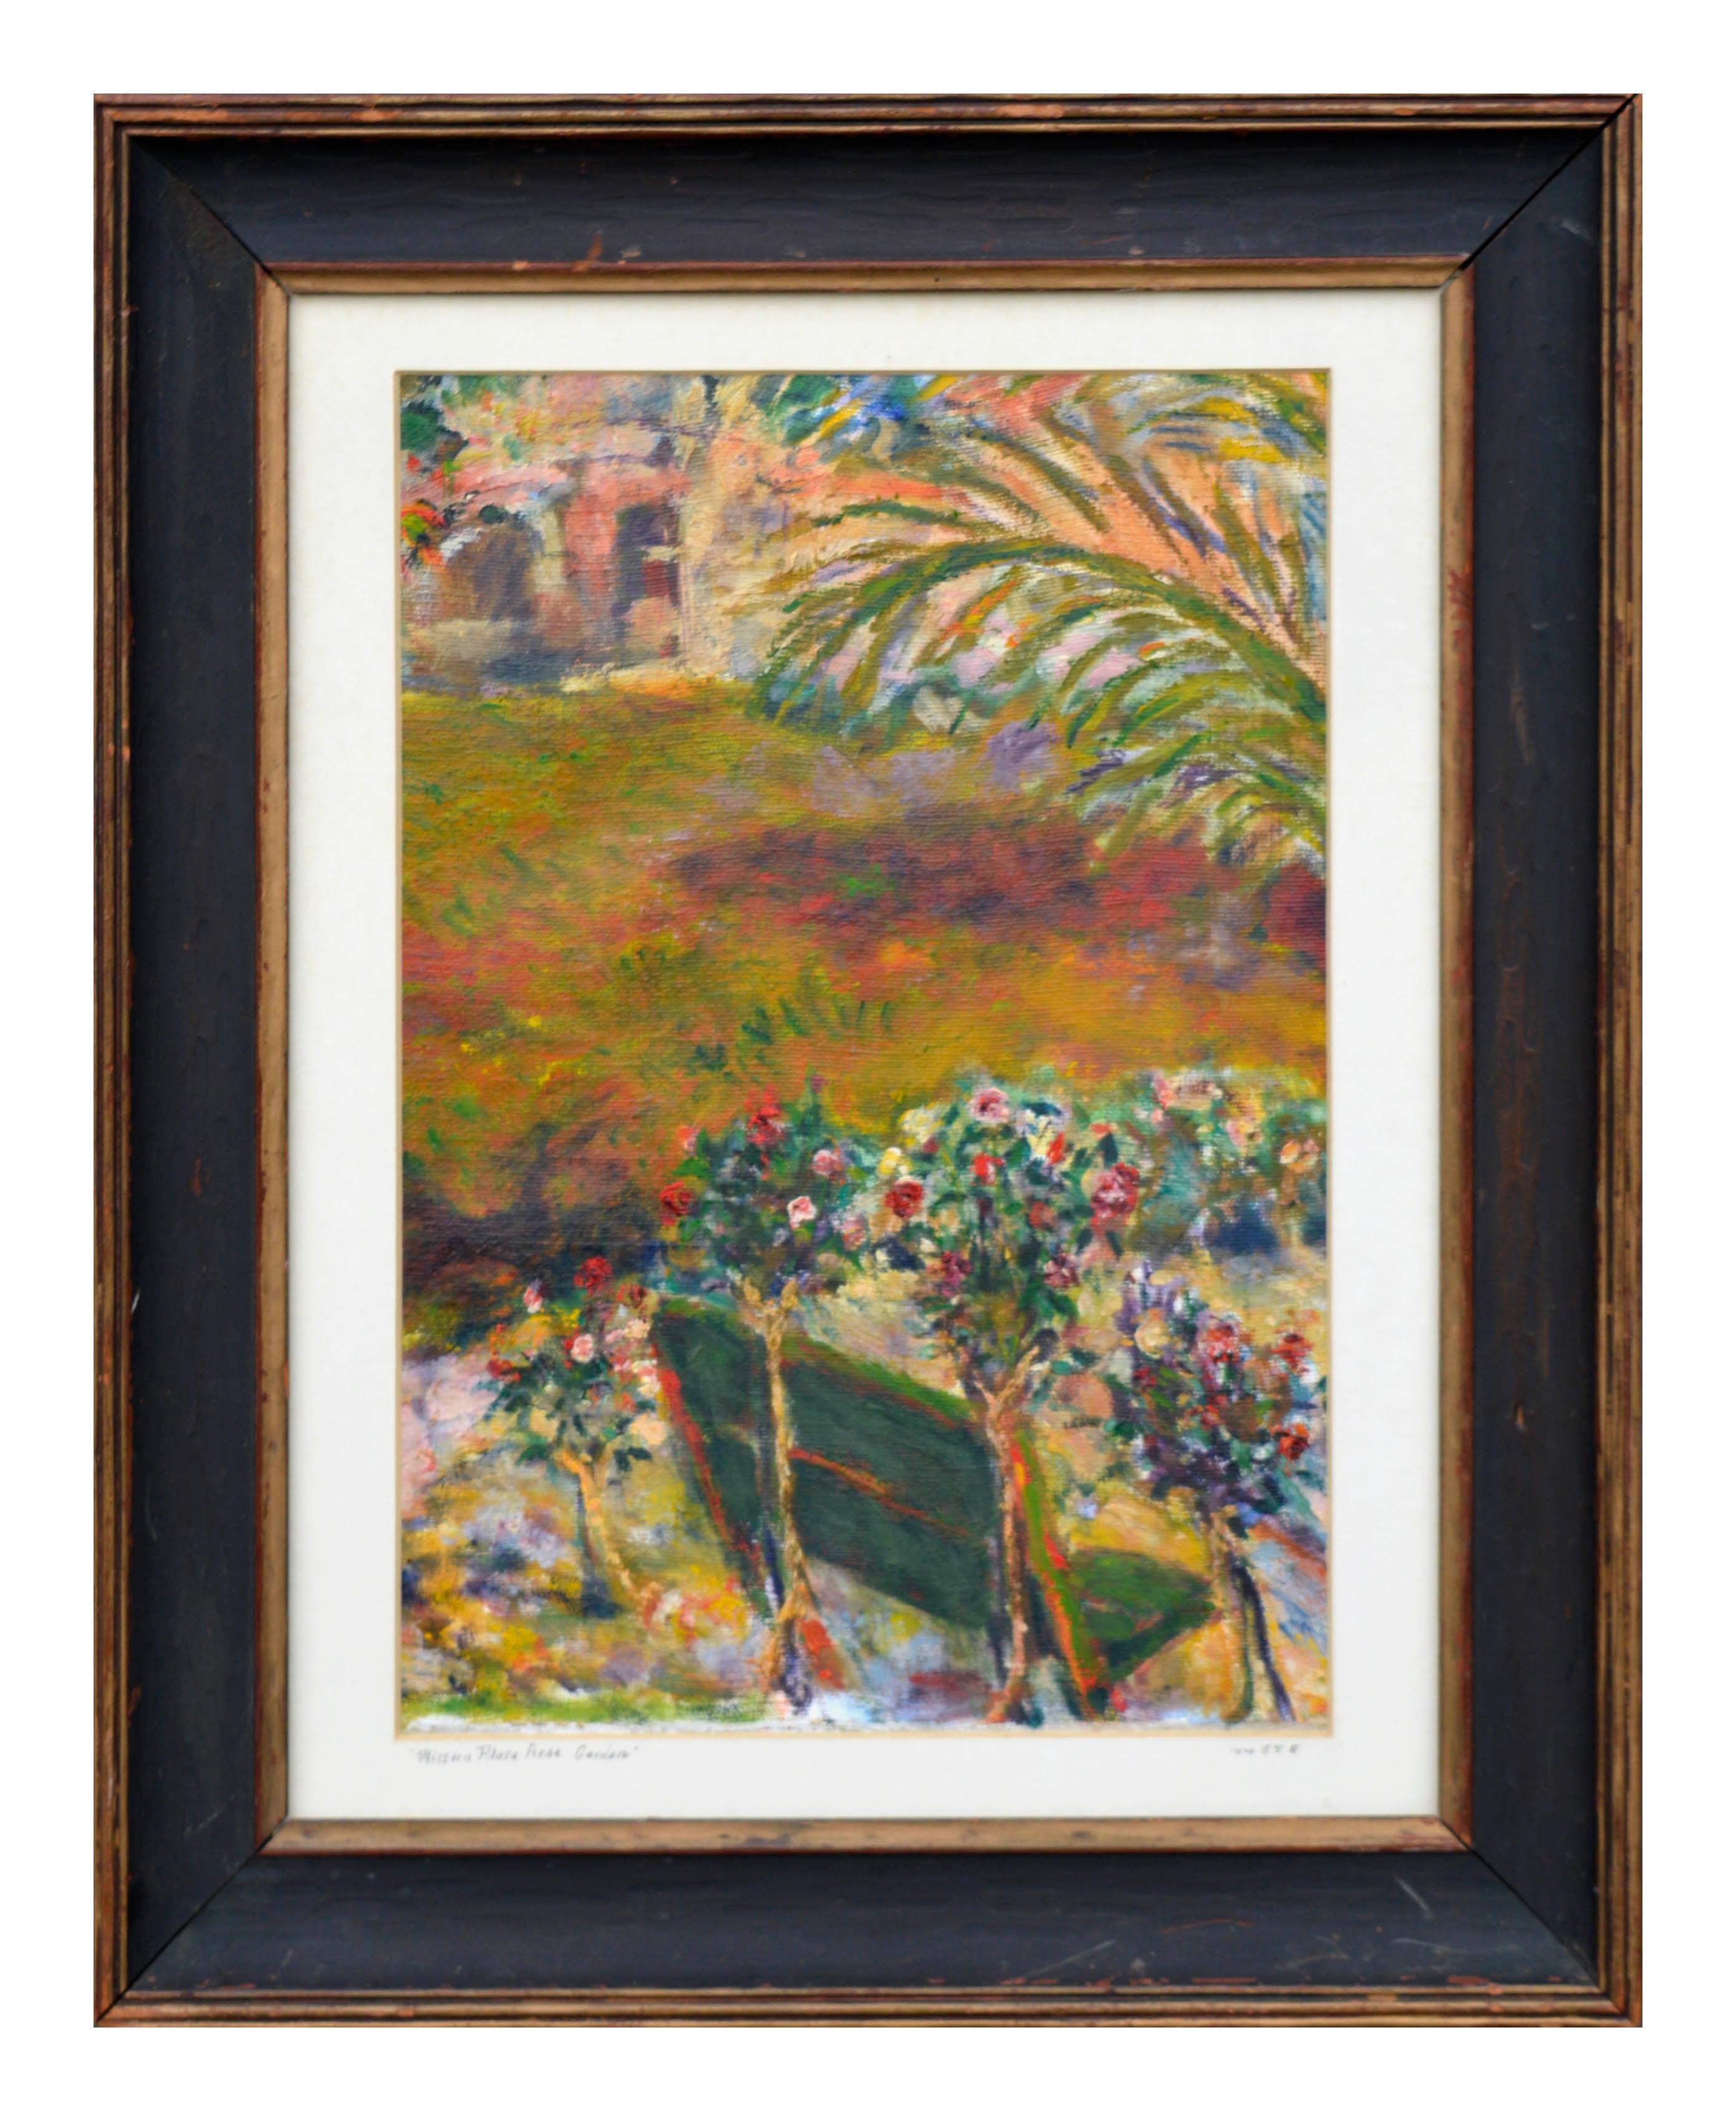 Mark Dante Ewald  Landscape Painting - Santa Barbara Mission Plaza Rose Garden Landscape